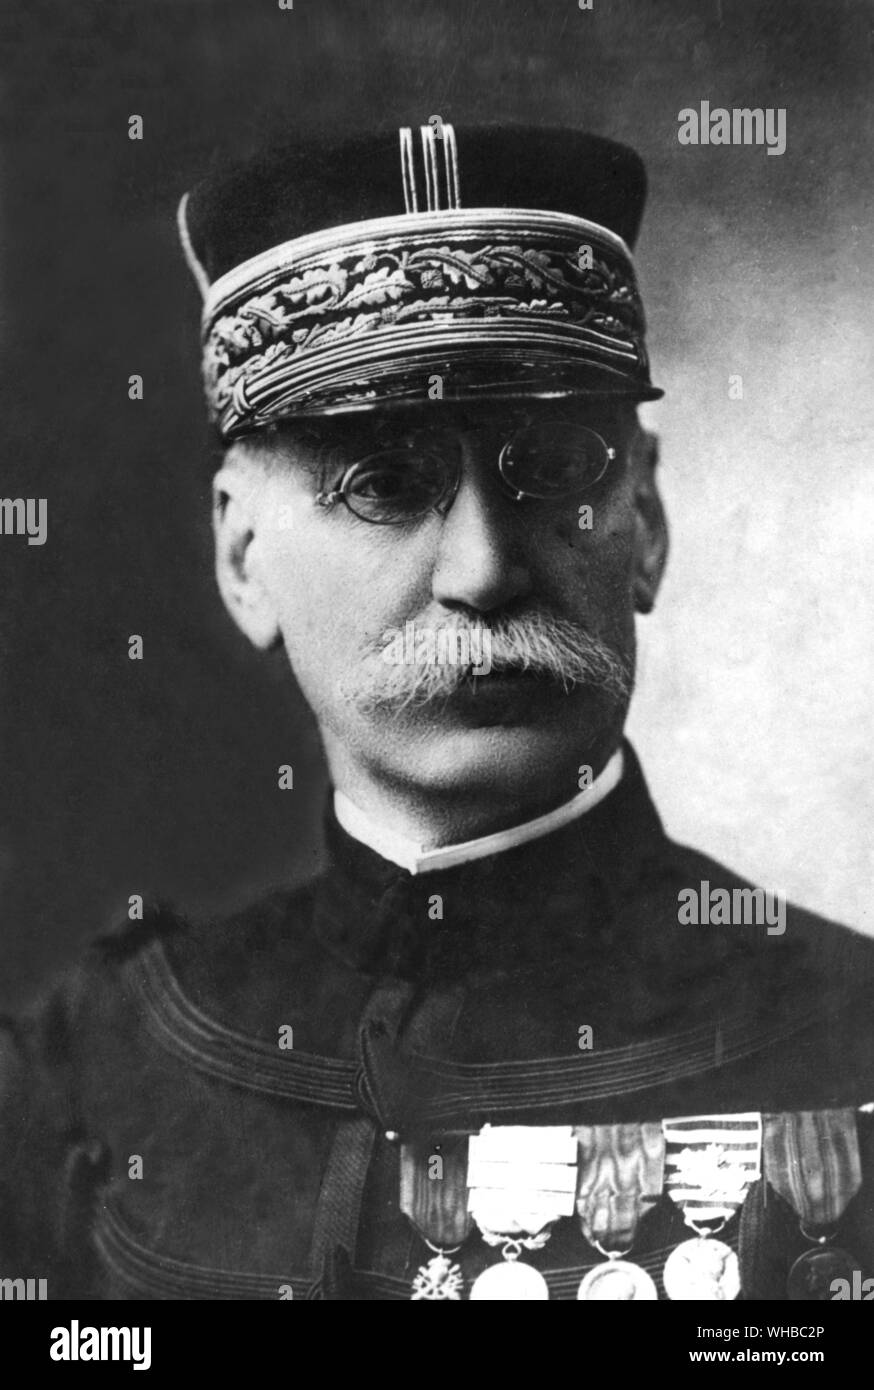 General Gallieni - Joseph Simon Gallieni (24. April 1849 - 27 Mai 1916) war ein französischer Soldat, die meisten Aktiven als militärischer Befehlshaber und Administrator in den französischen Kolonien und beendete seine Karriere während des Ersten Weltkrieges. Er Marschall von Frankreich posthum 1921.. Stockfoto